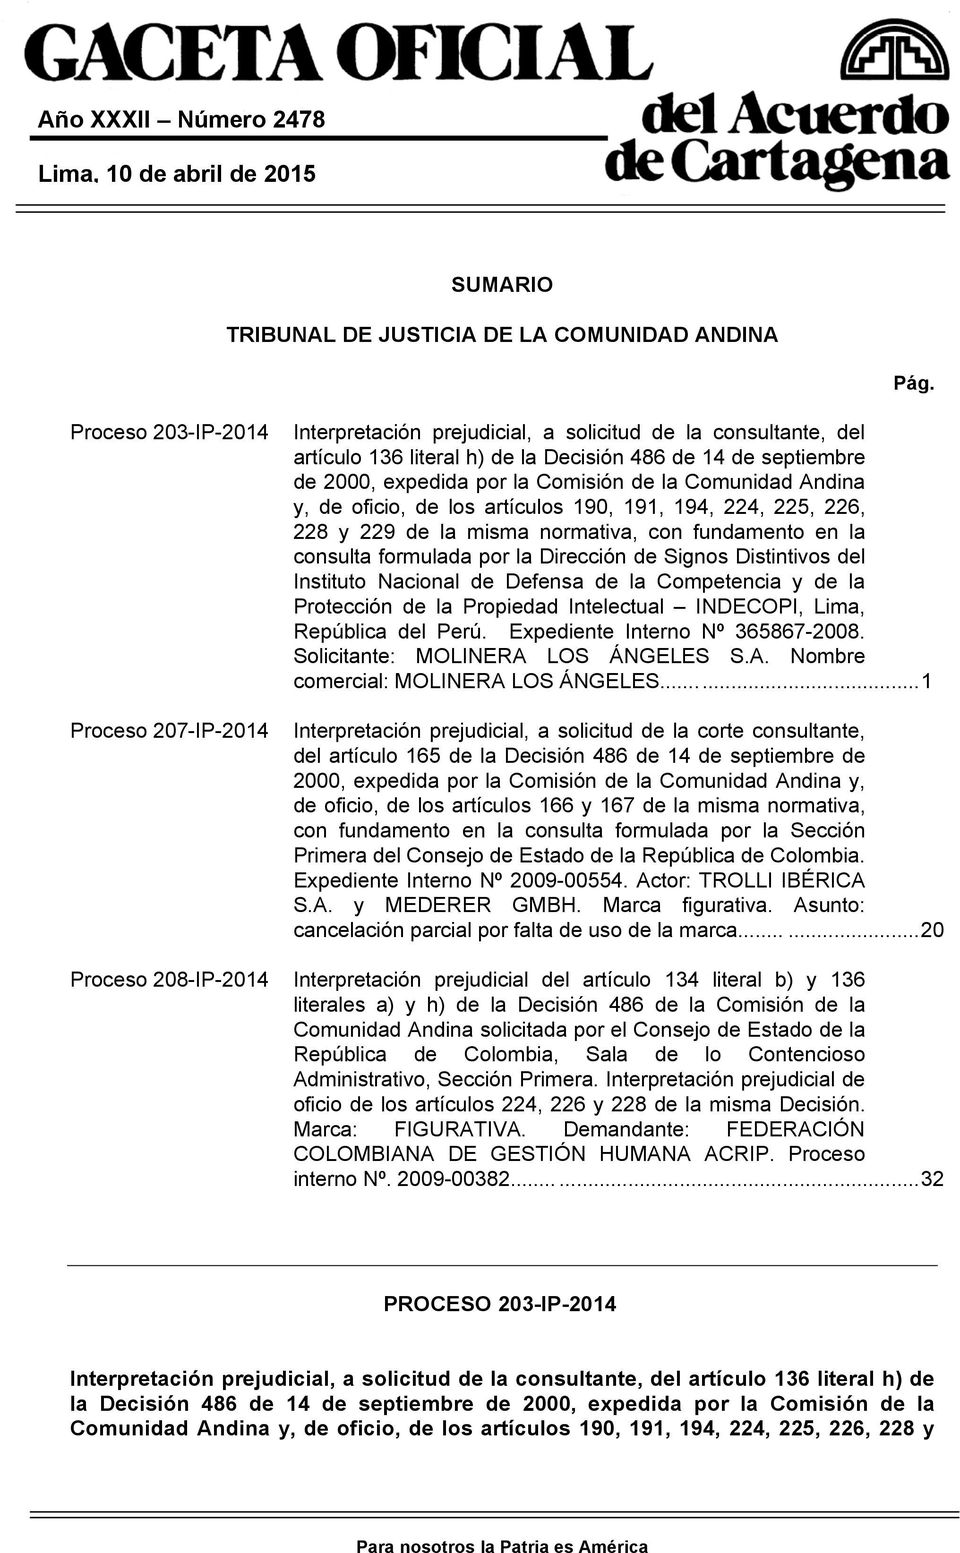 de la Comunidad Andina y, de oficio, de los artículos 190, 191, 194, 224, 225, 226, 228 y 229 de la misma normativa, con fundamento en la consulta formulada por la Dirección de Signos Distintivos del